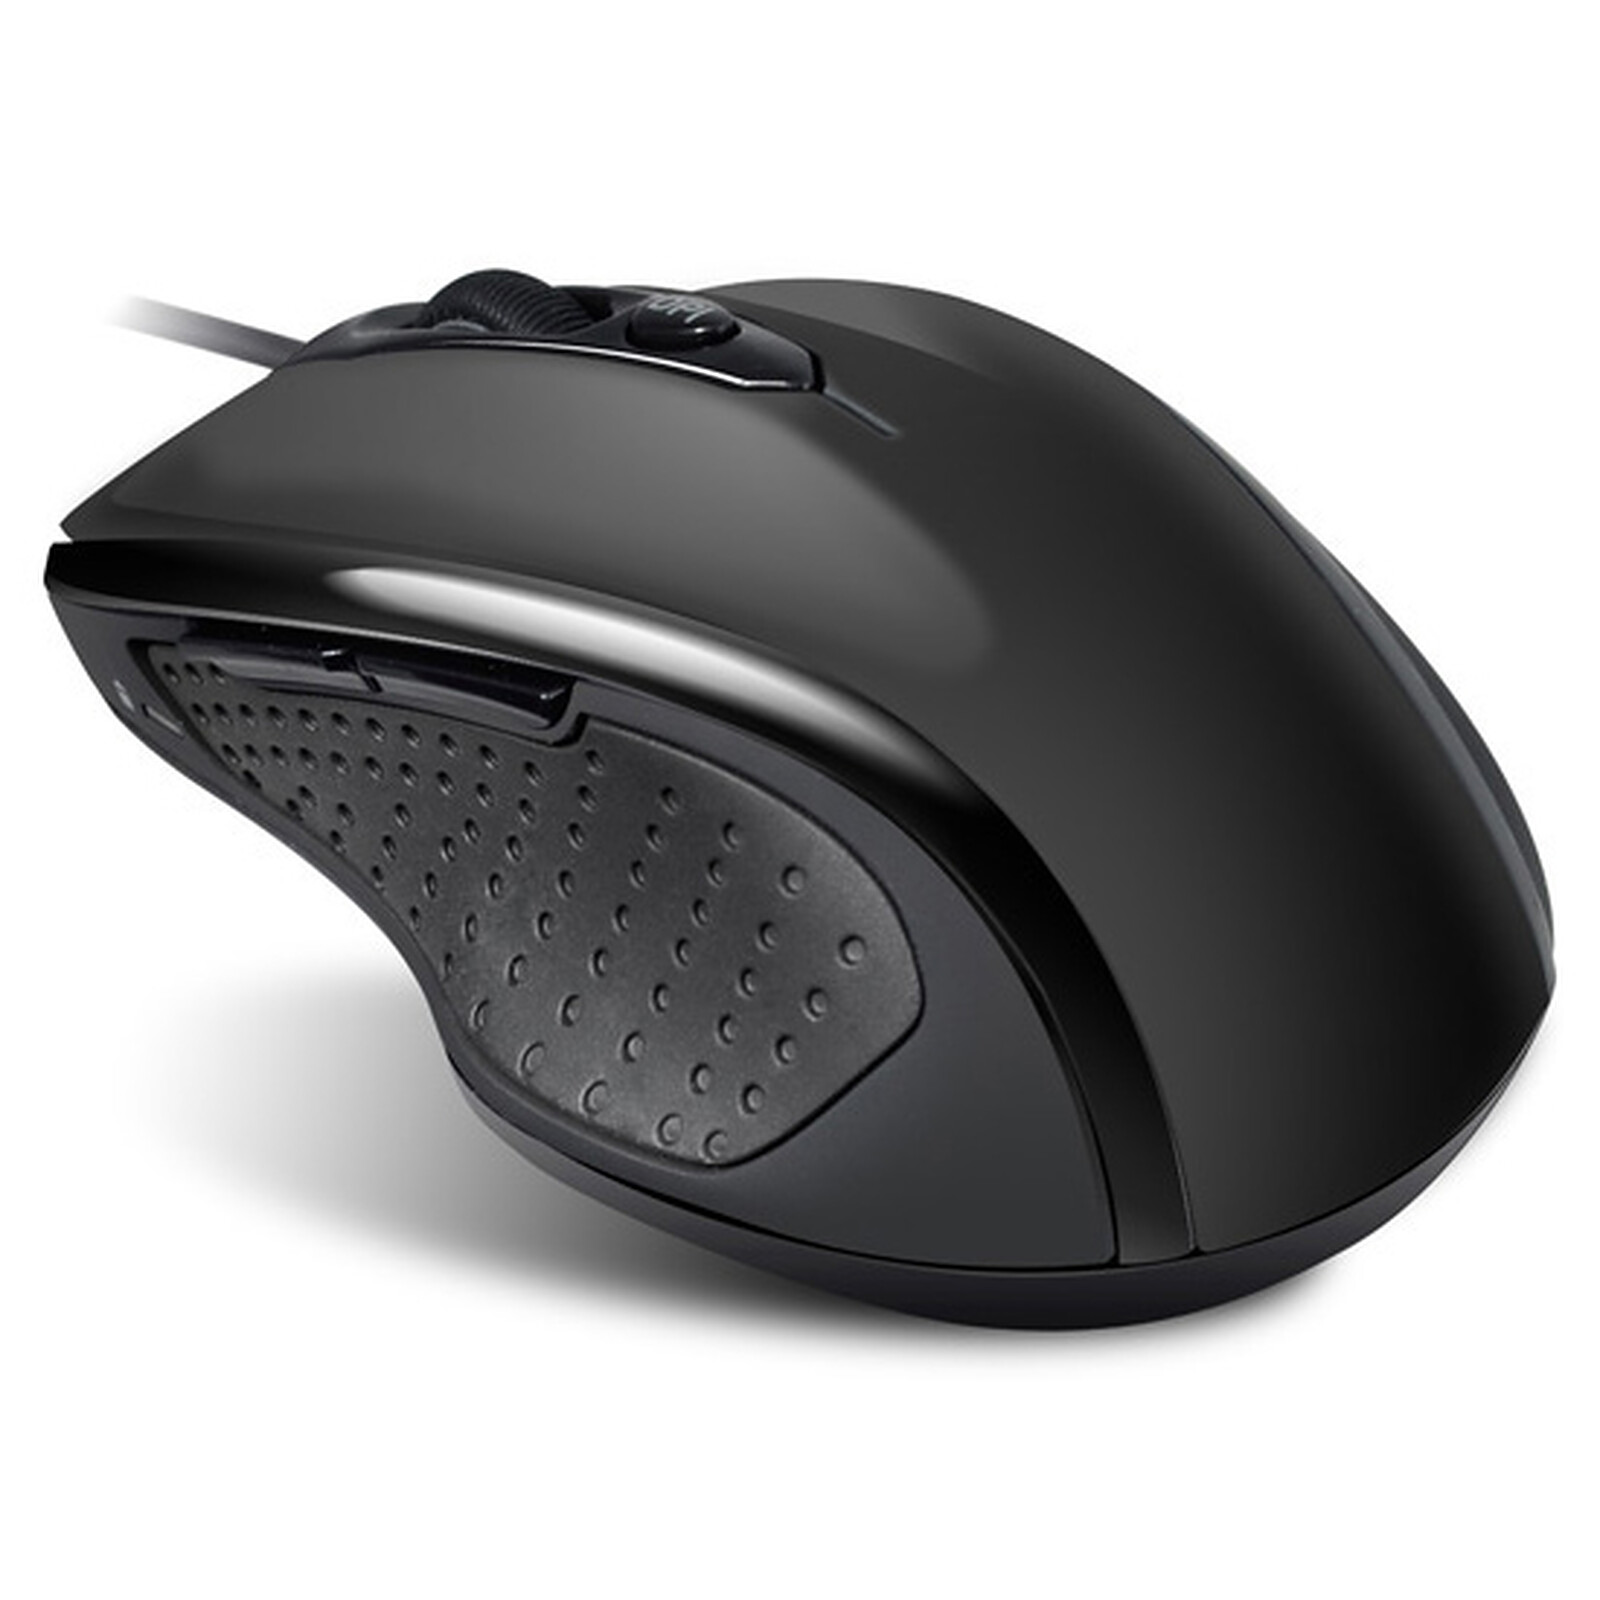 Advance Shape 6D Mouse (noir) - Souris PC - Garantie 3 ans LDLC